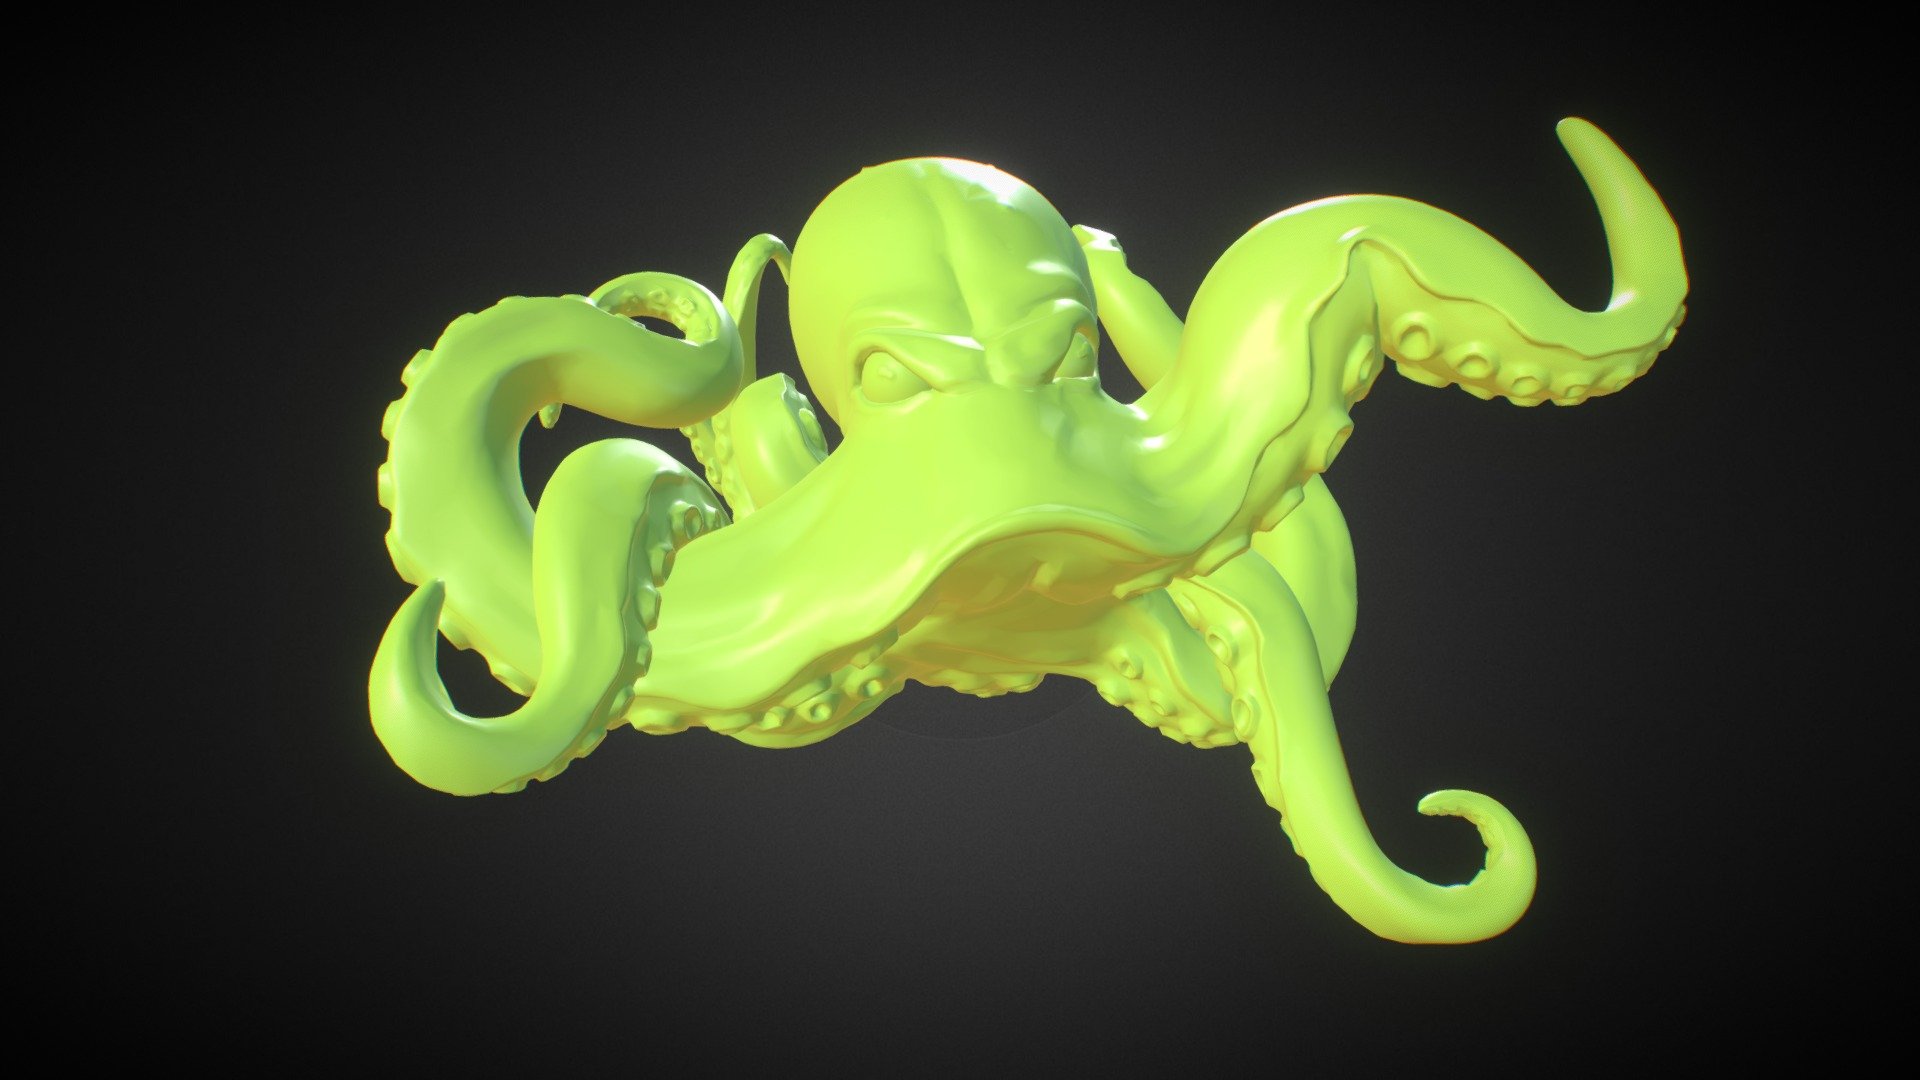 https://www.behance.net/gallery/22565233/3D-Models - Octopus - 3D model by mateovallejo 3d model